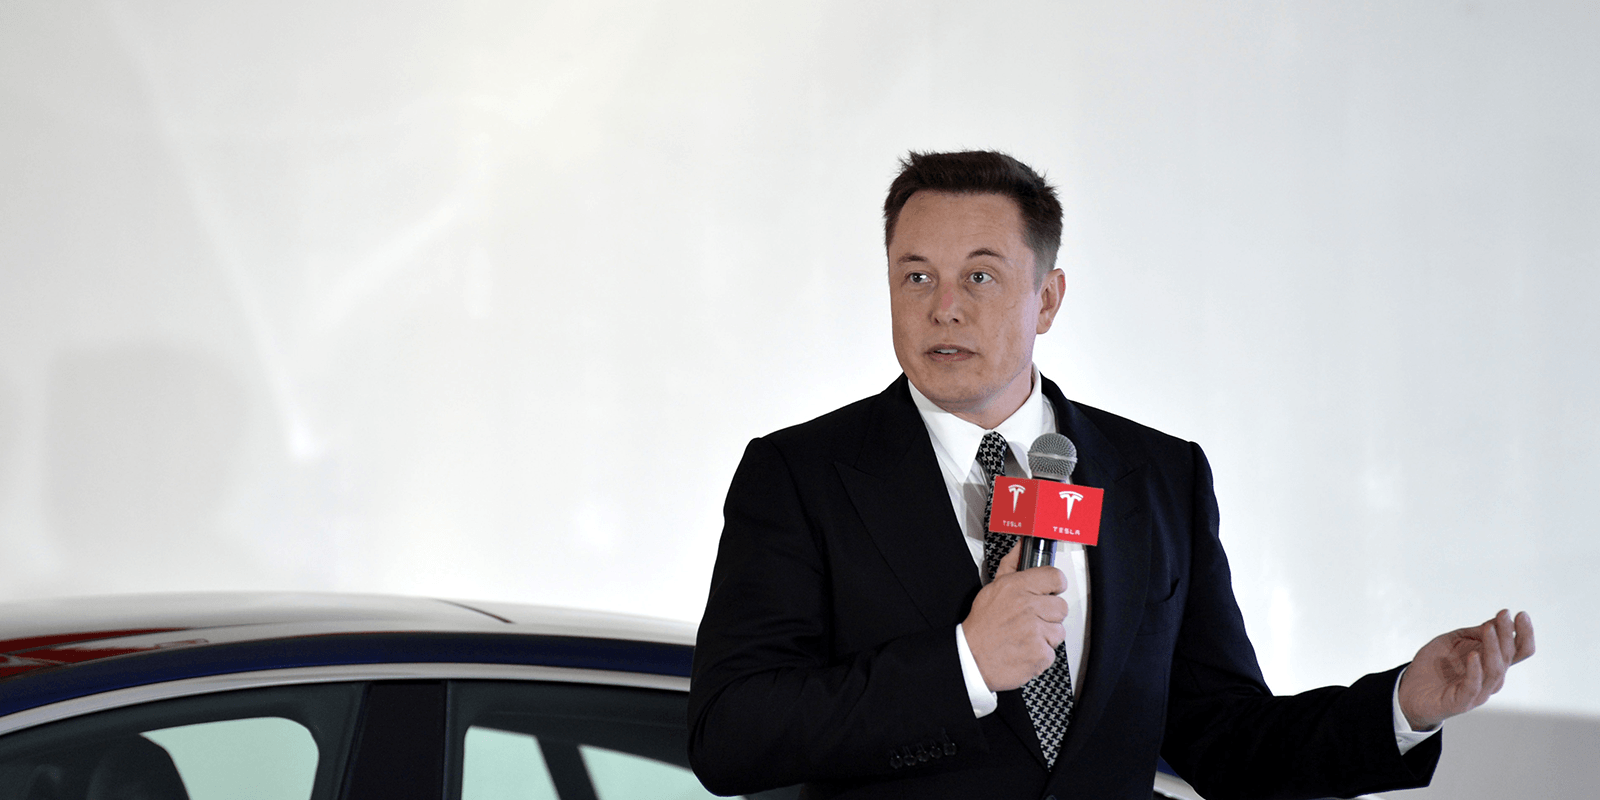 Tweets mit Nachspiel: Investor verklagt Tesla-Chef Musk